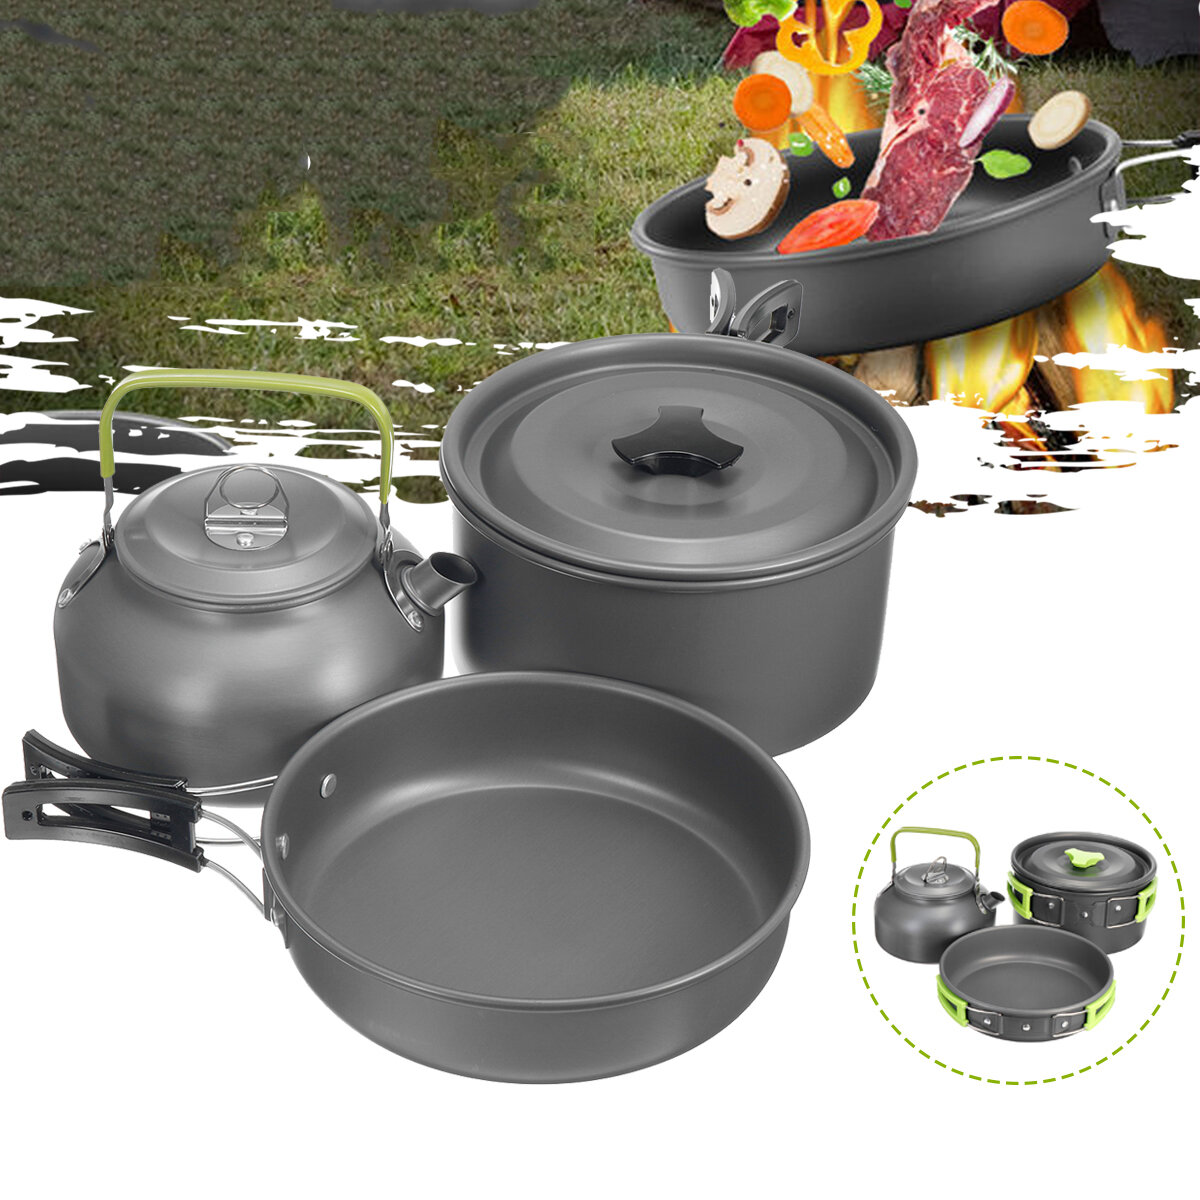 Ensemble de 3 casseroles de camping, ustensiles de cuisine, bouilloire, ensemble en alliage d'aluminium portable pour le camping, la pêche et les voyages.